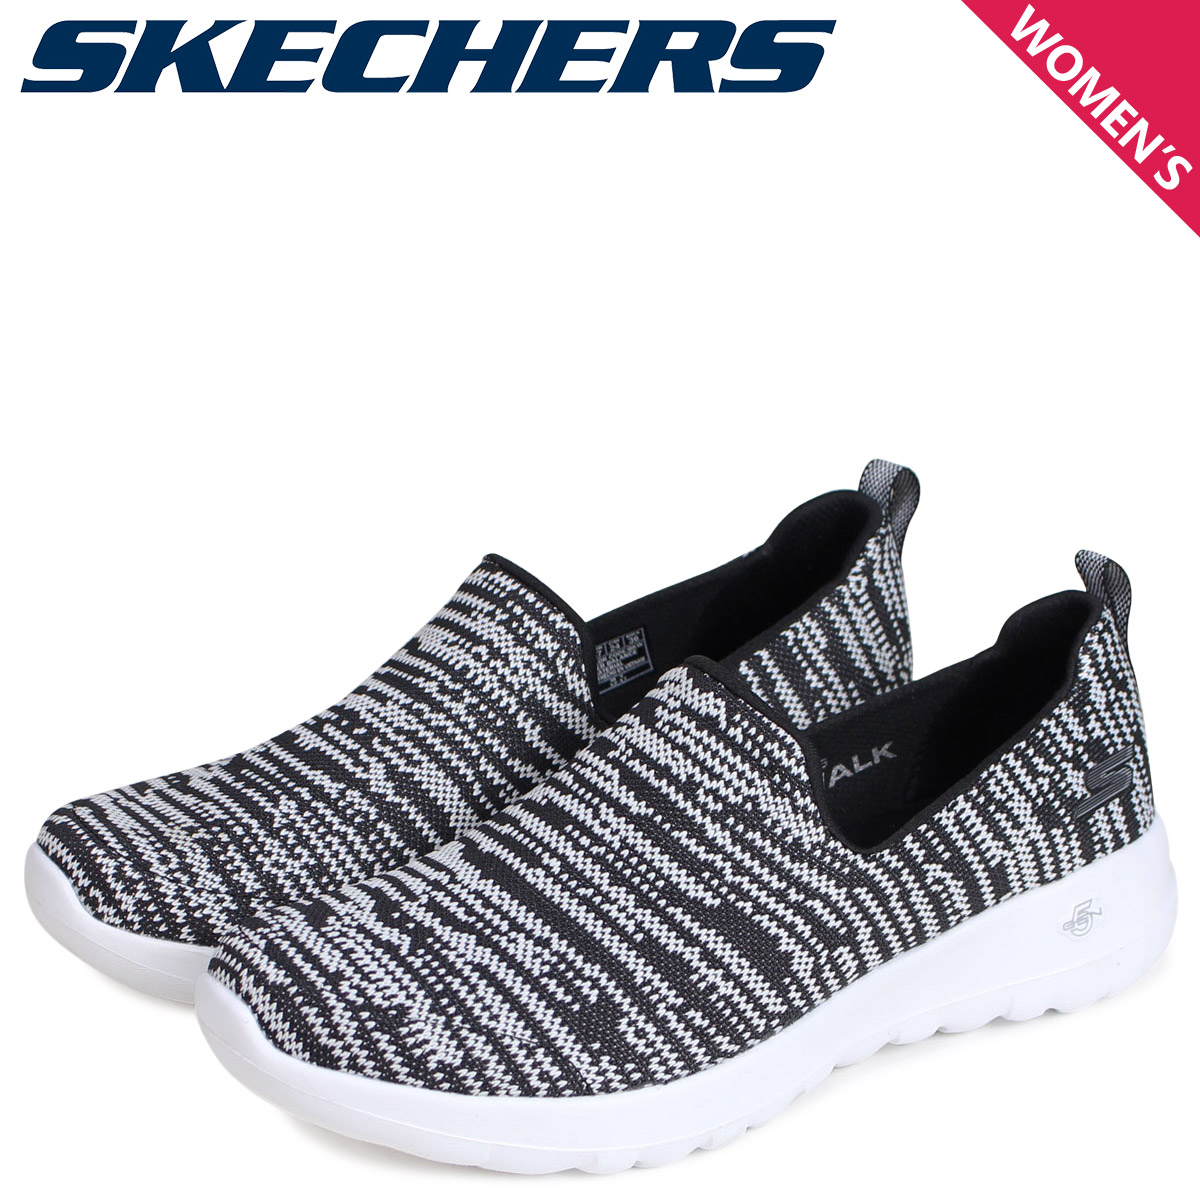 skechers go walk joy famous footwear